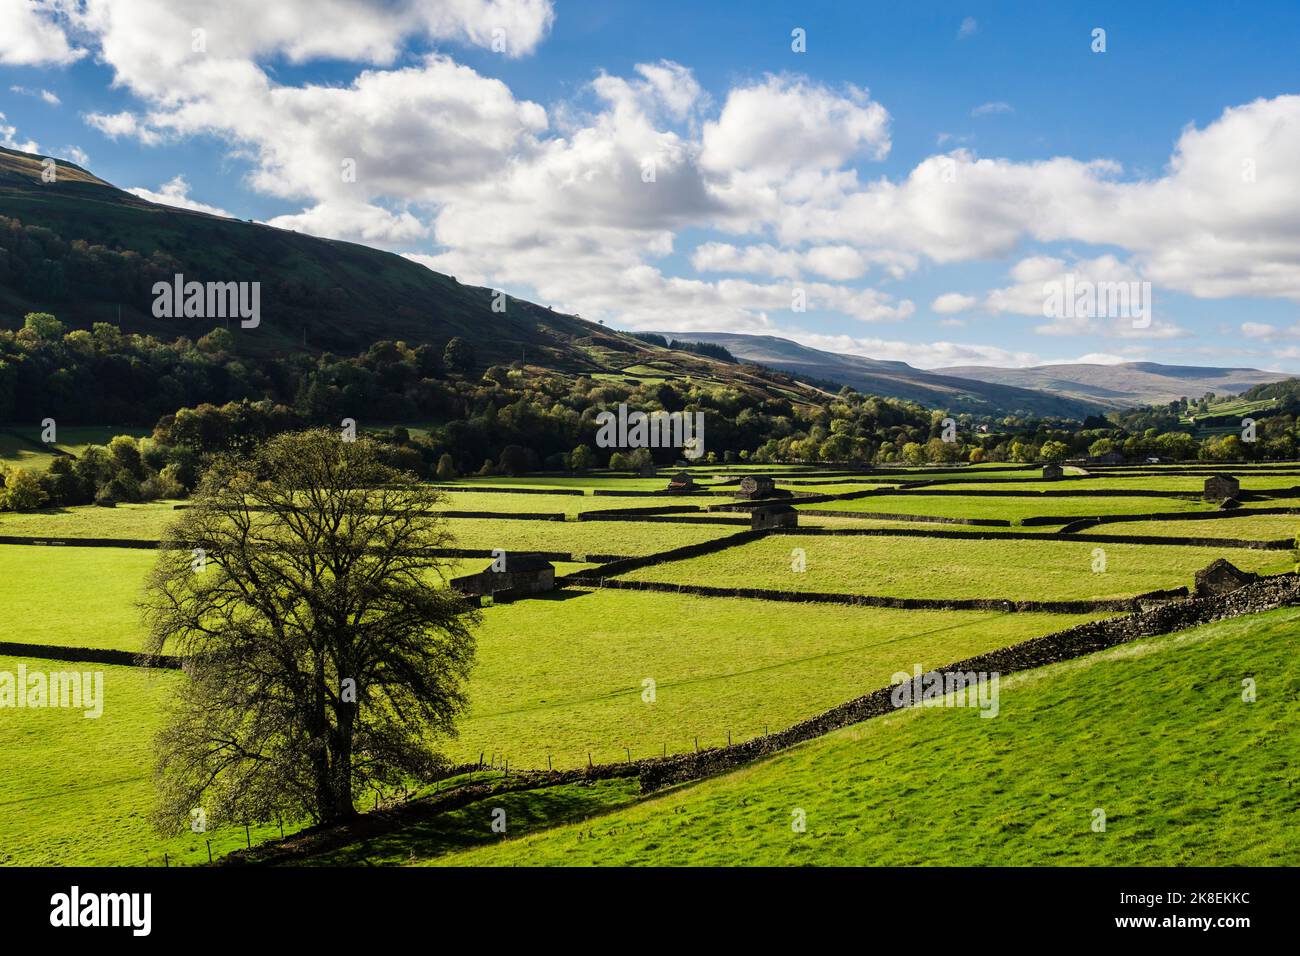 Campagne anglaise avec champs, granges et murs en pierre dans le parc national de Yorkshire Dales. Gunnerside, Swaledale, Yorkshire du Nord, Angleterre, Royaume-Uni, Grande-Bretagne Banque D'Images